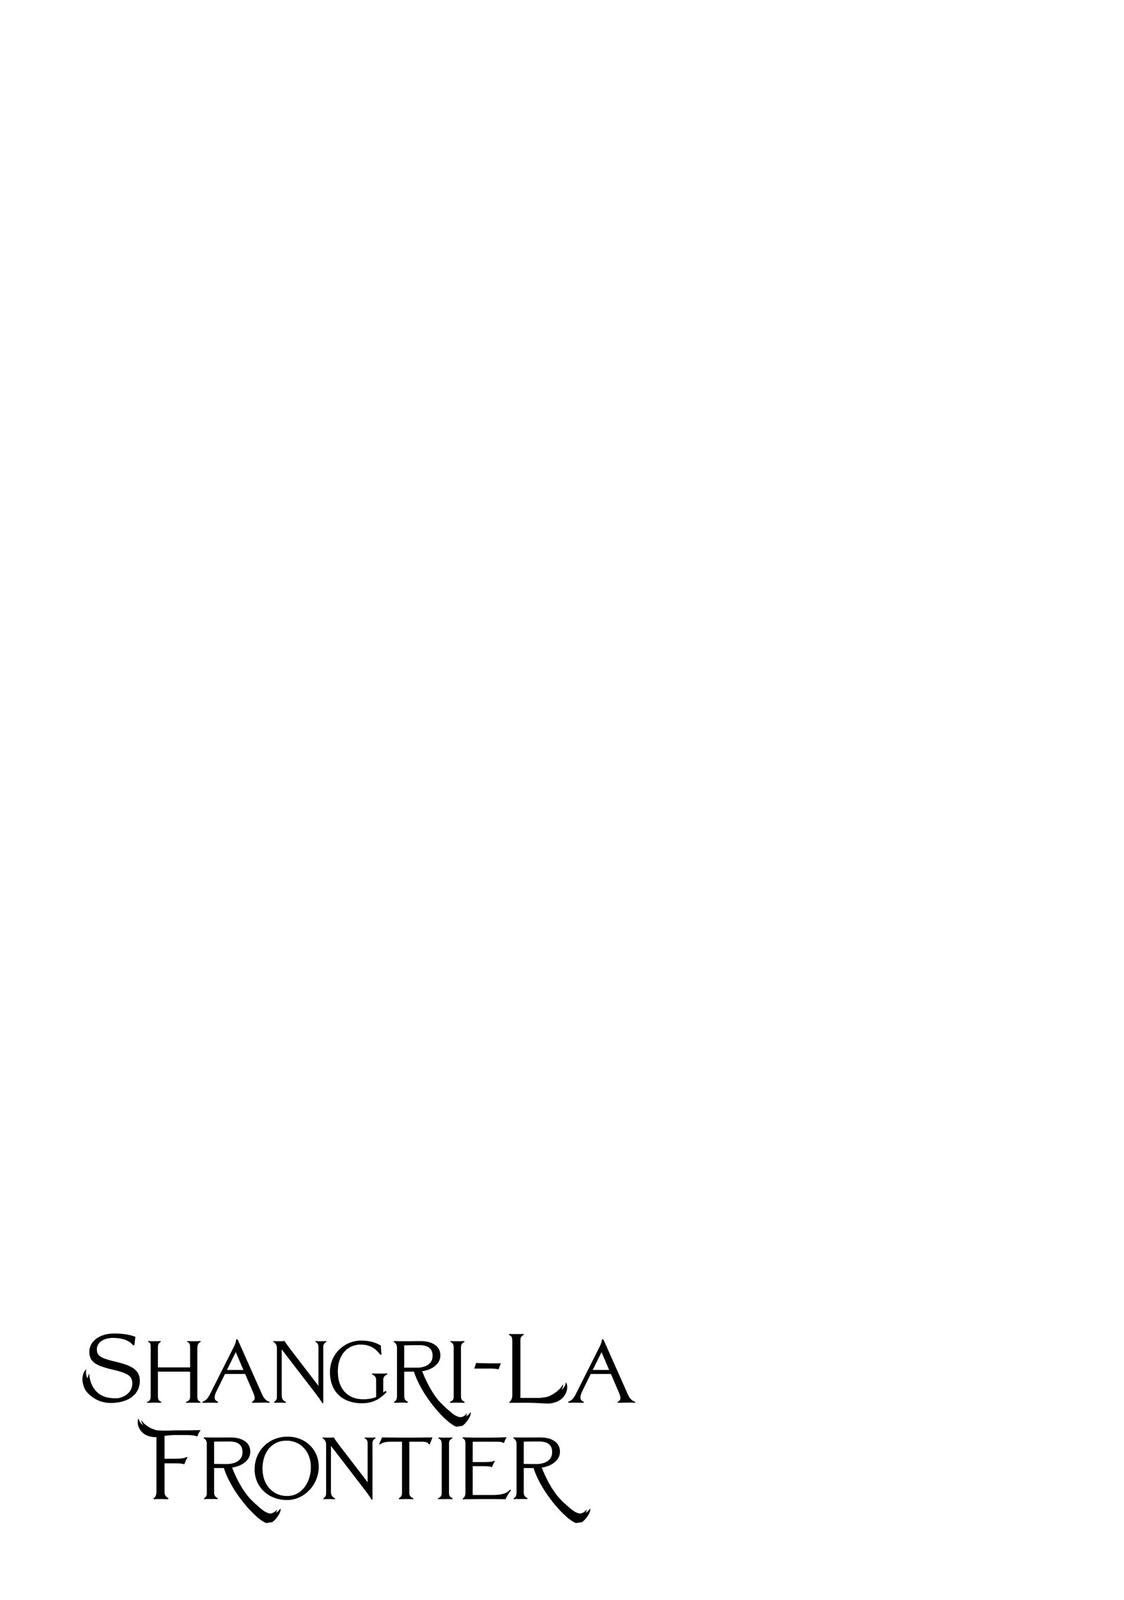 Shangri-la Frontier, Chapter 48 image 19